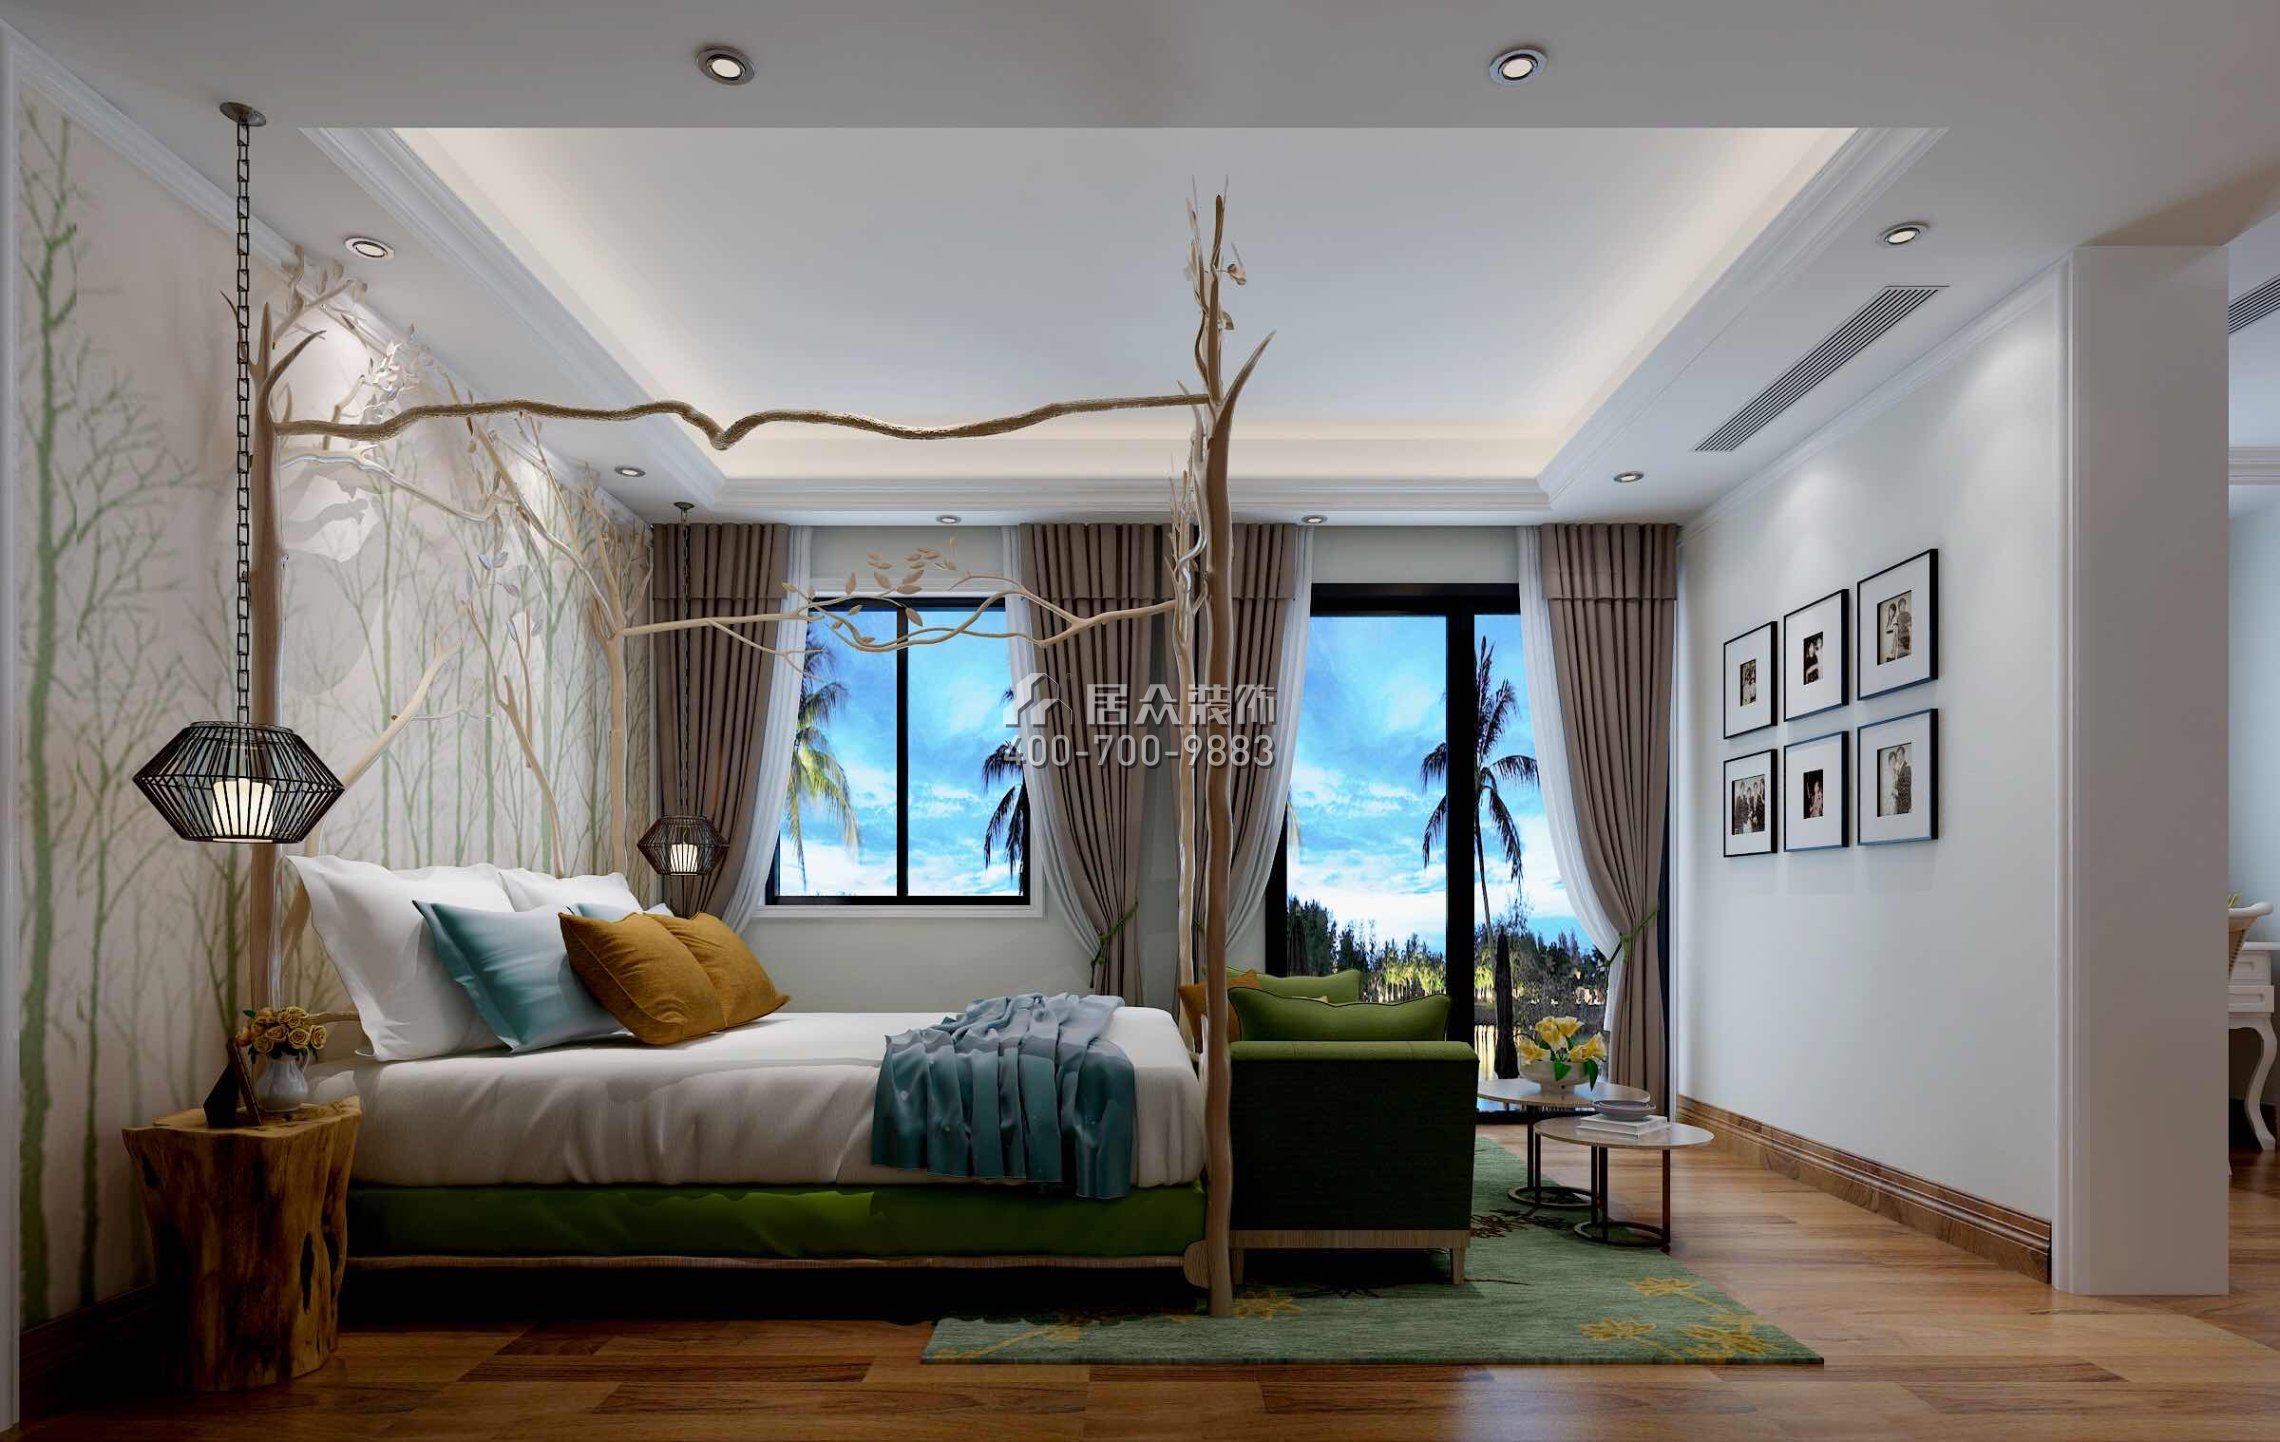 麗水佳園560平方米混搭風格別墅戶型臥室裝修效果圖